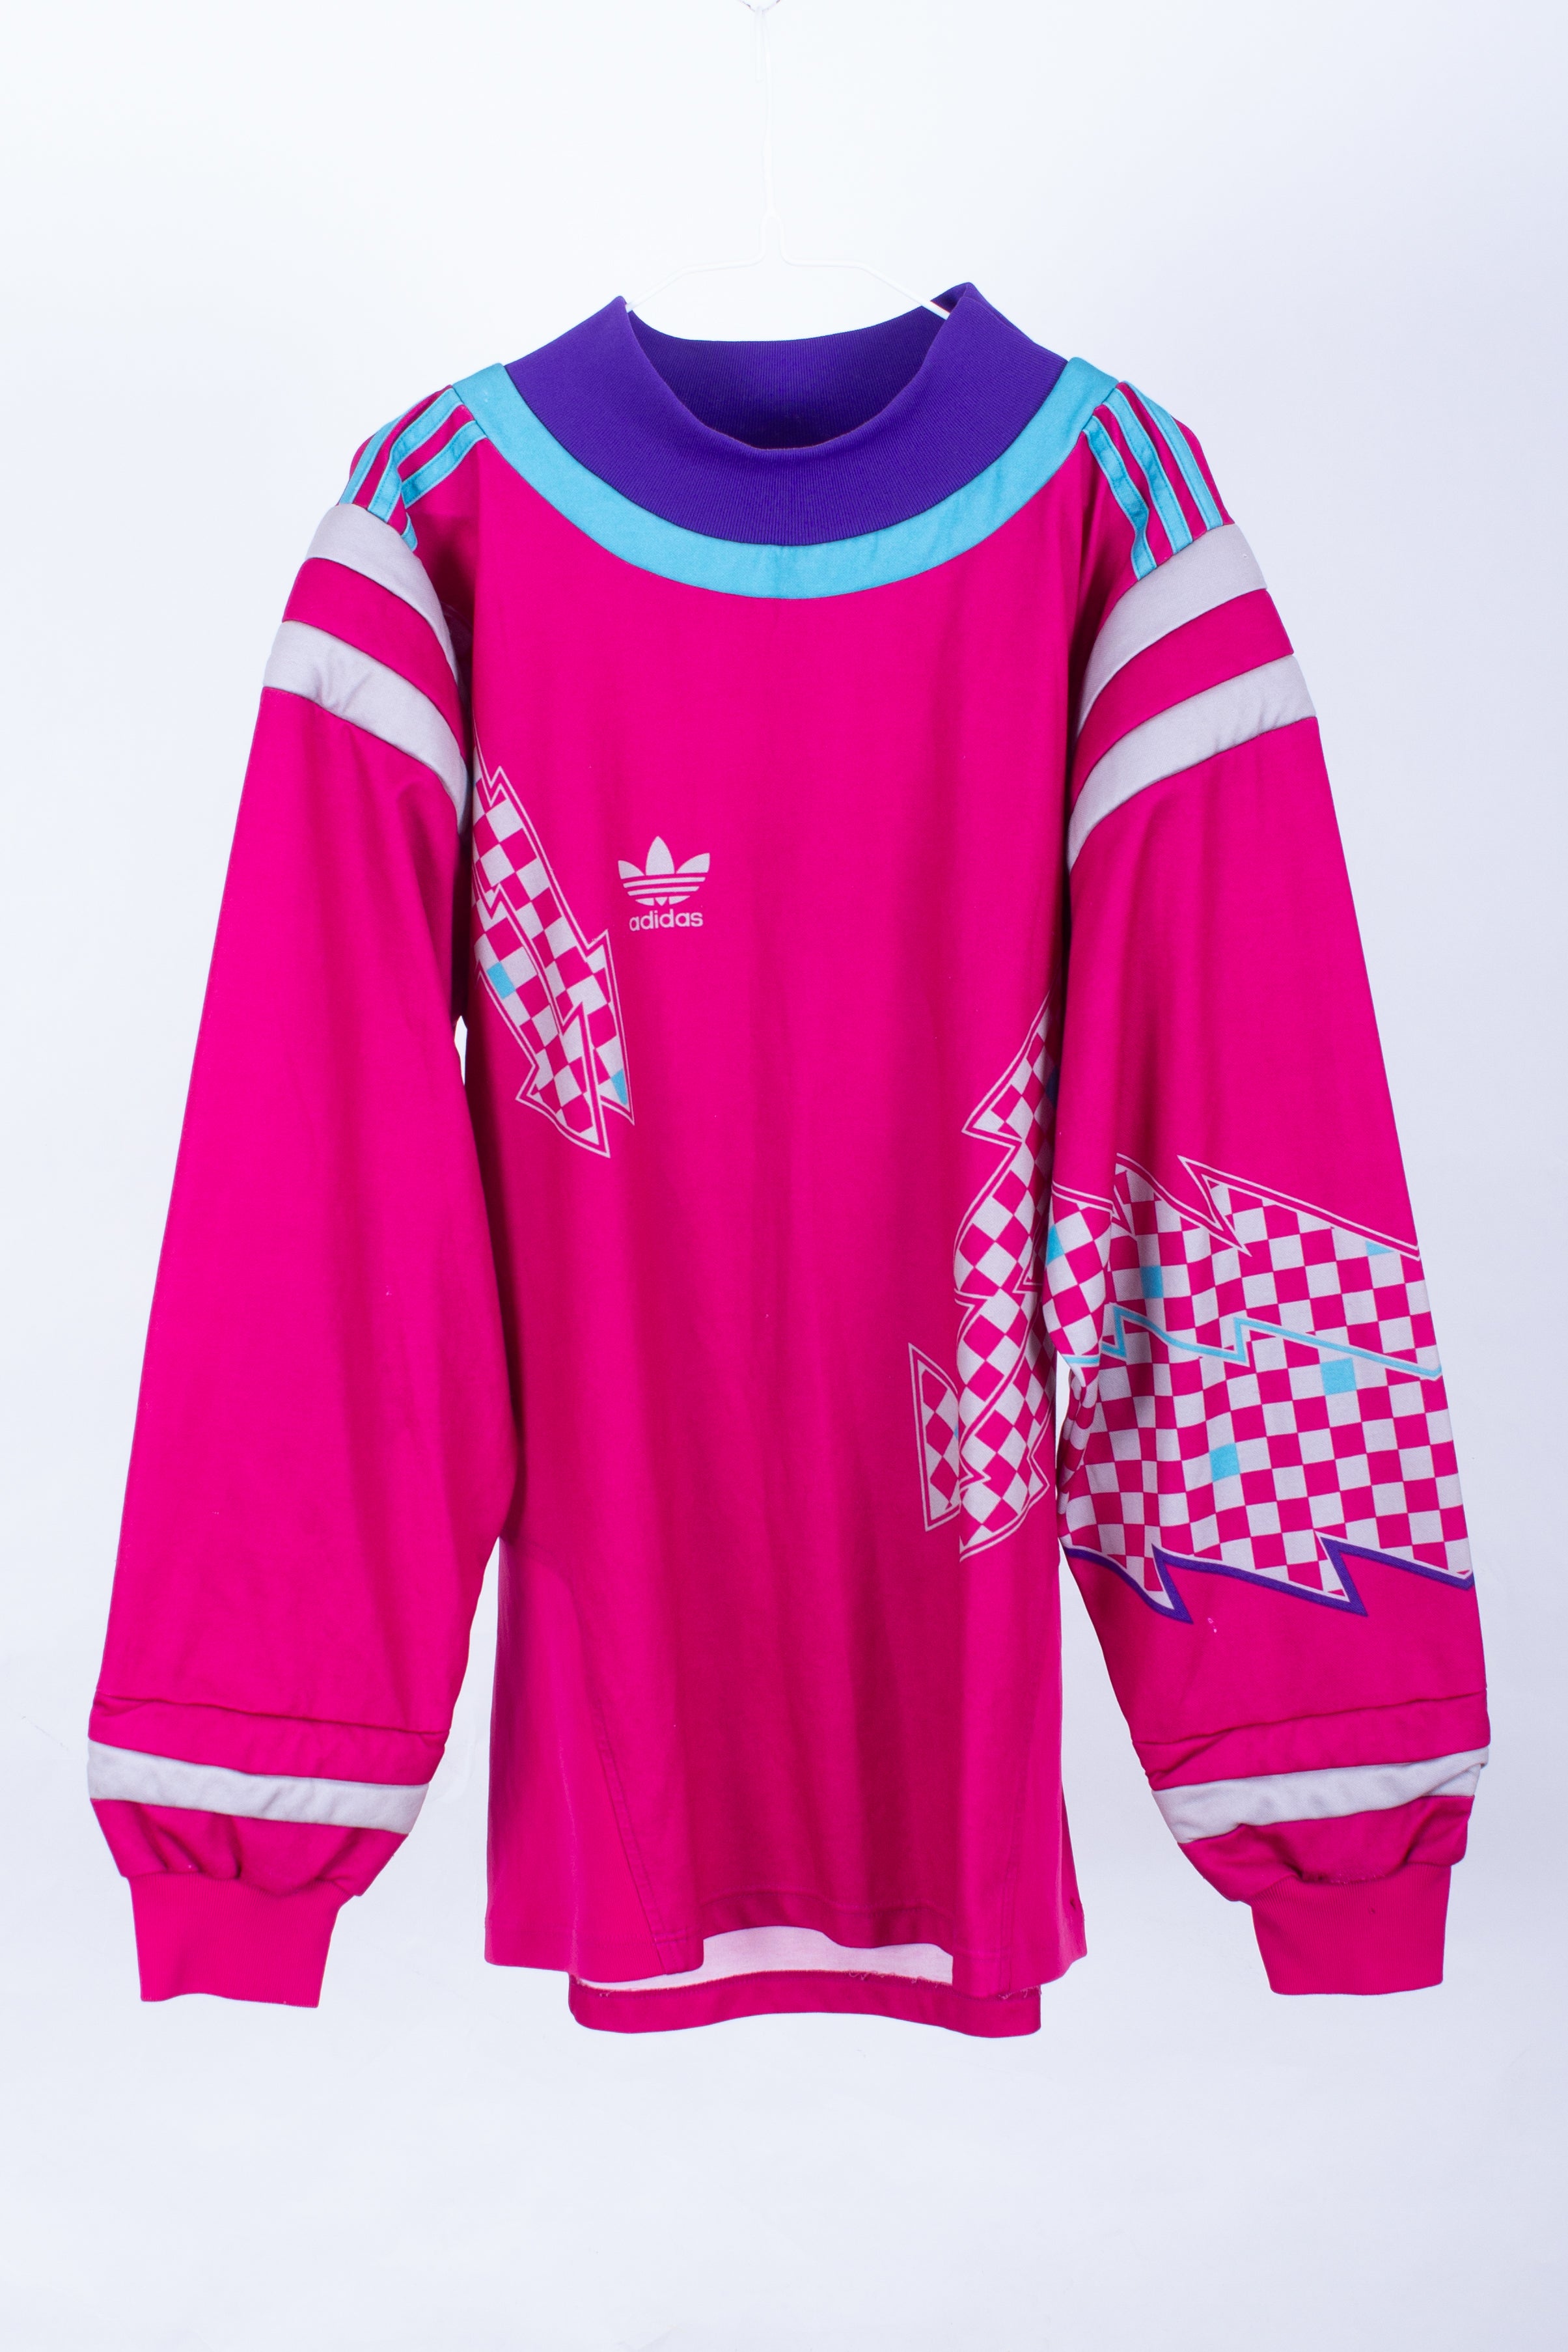 Adidas Goalkeeper Template Shirt (L)